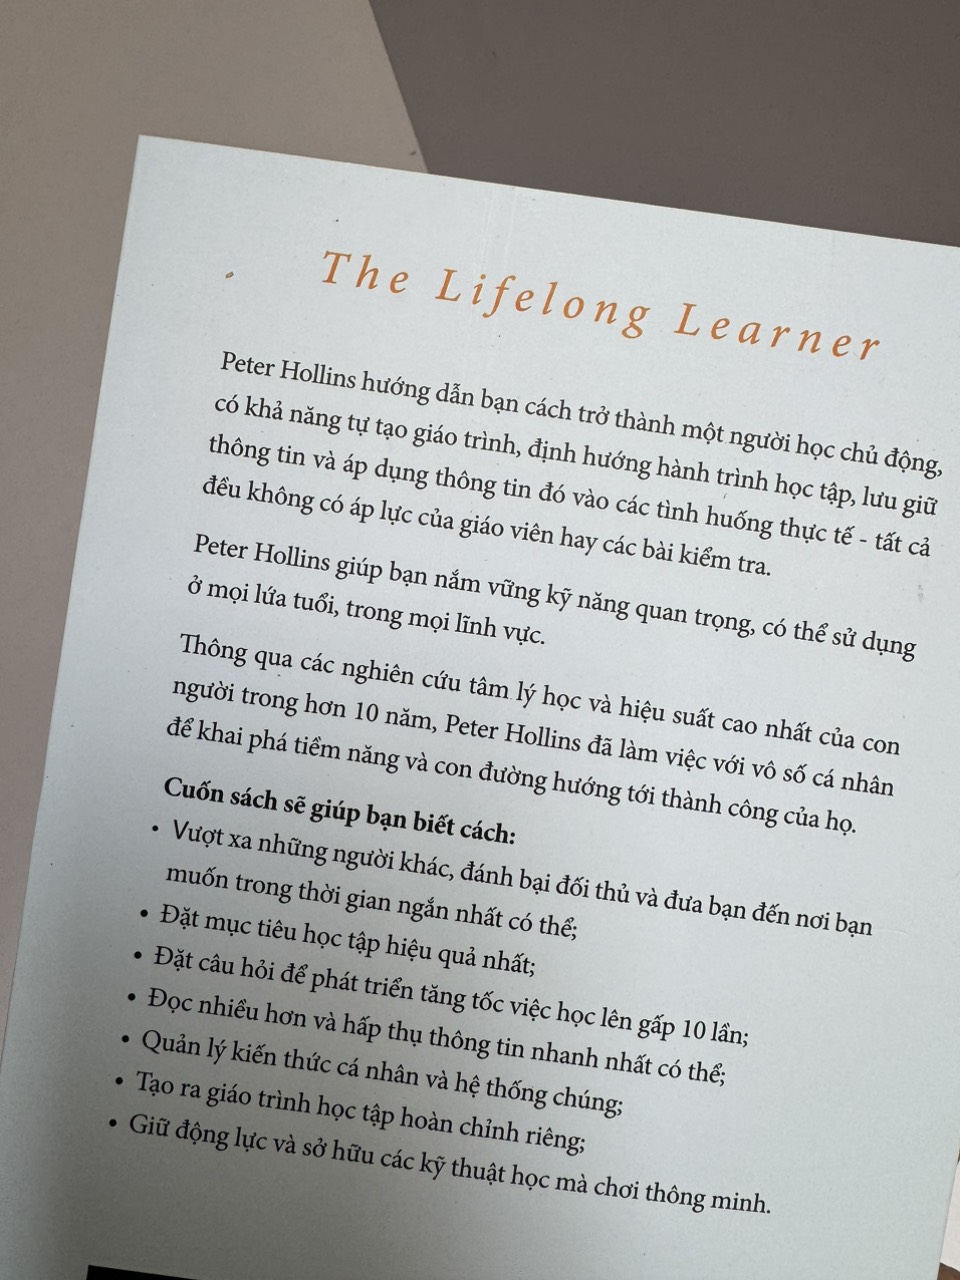 HỌC TẬP SUỐT ĐỜI – THE LIFELONG LEARNER – Peter Hollins - Tống Liên Anh &amp; Lê Anh Thư dịch -Timesbook- NXB Dân Trí